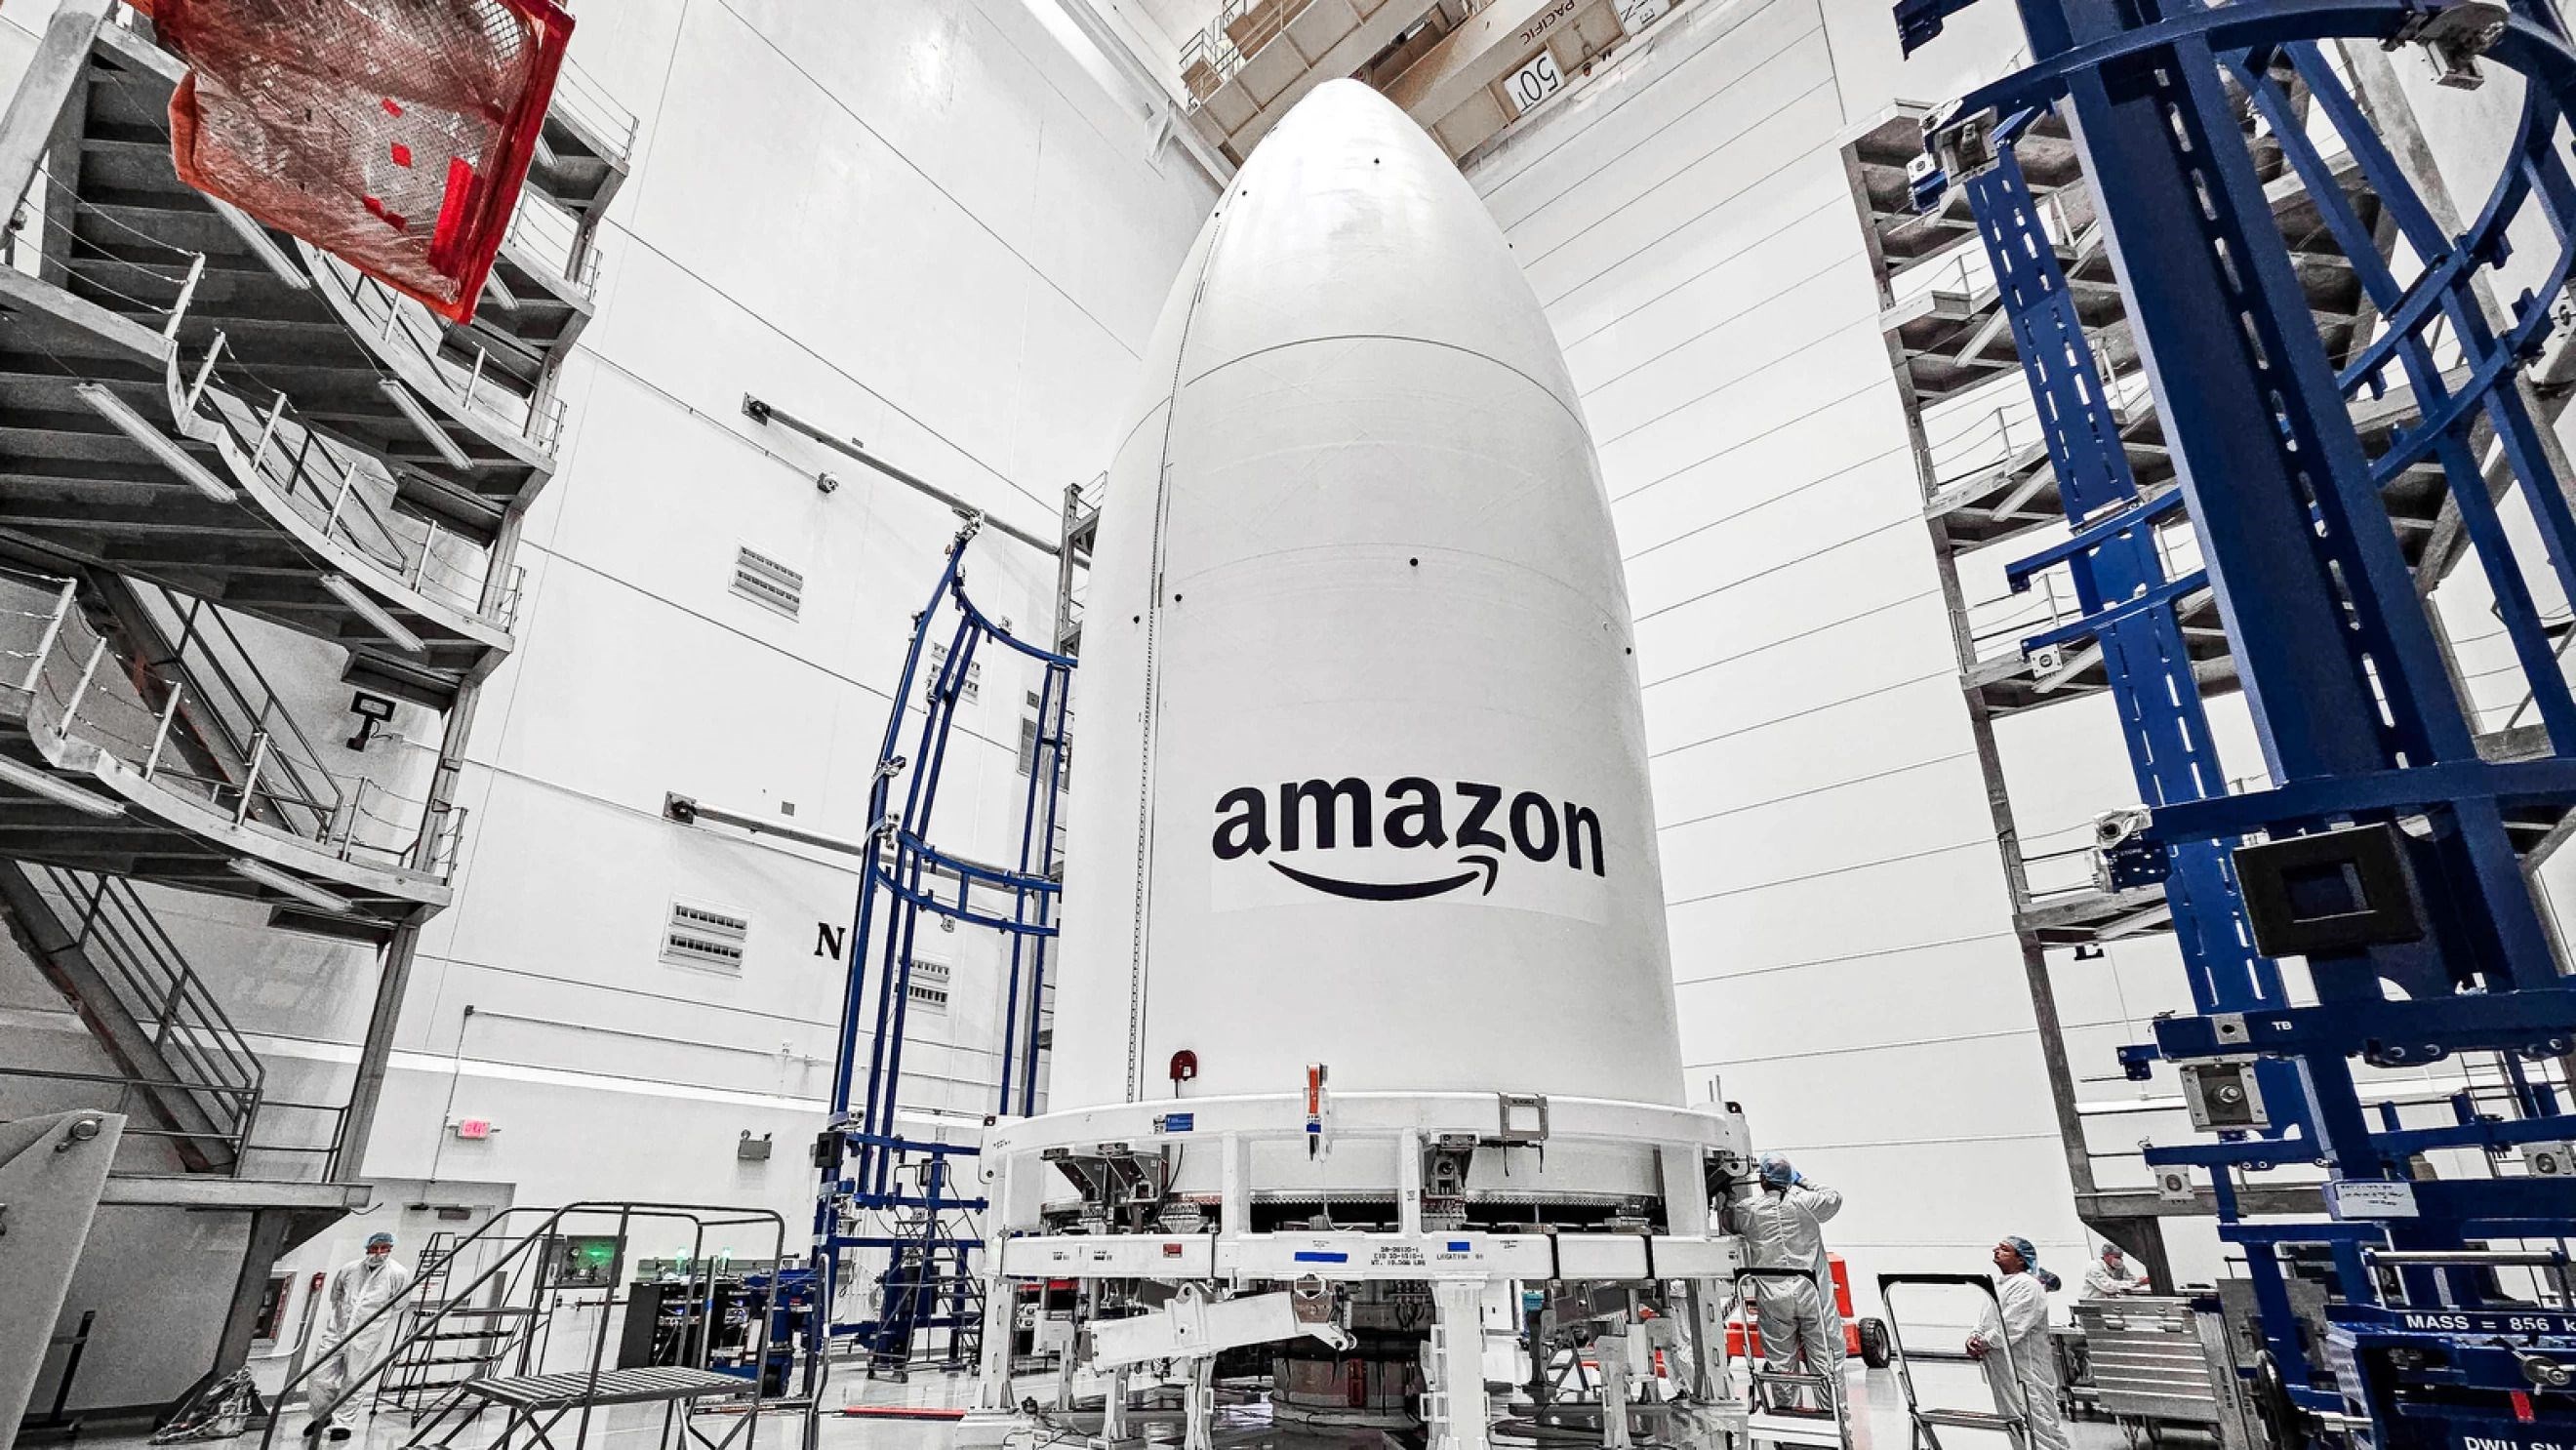 Amazon’dan Starlink’e rakip geldi: Uydular fırlatılıyor!